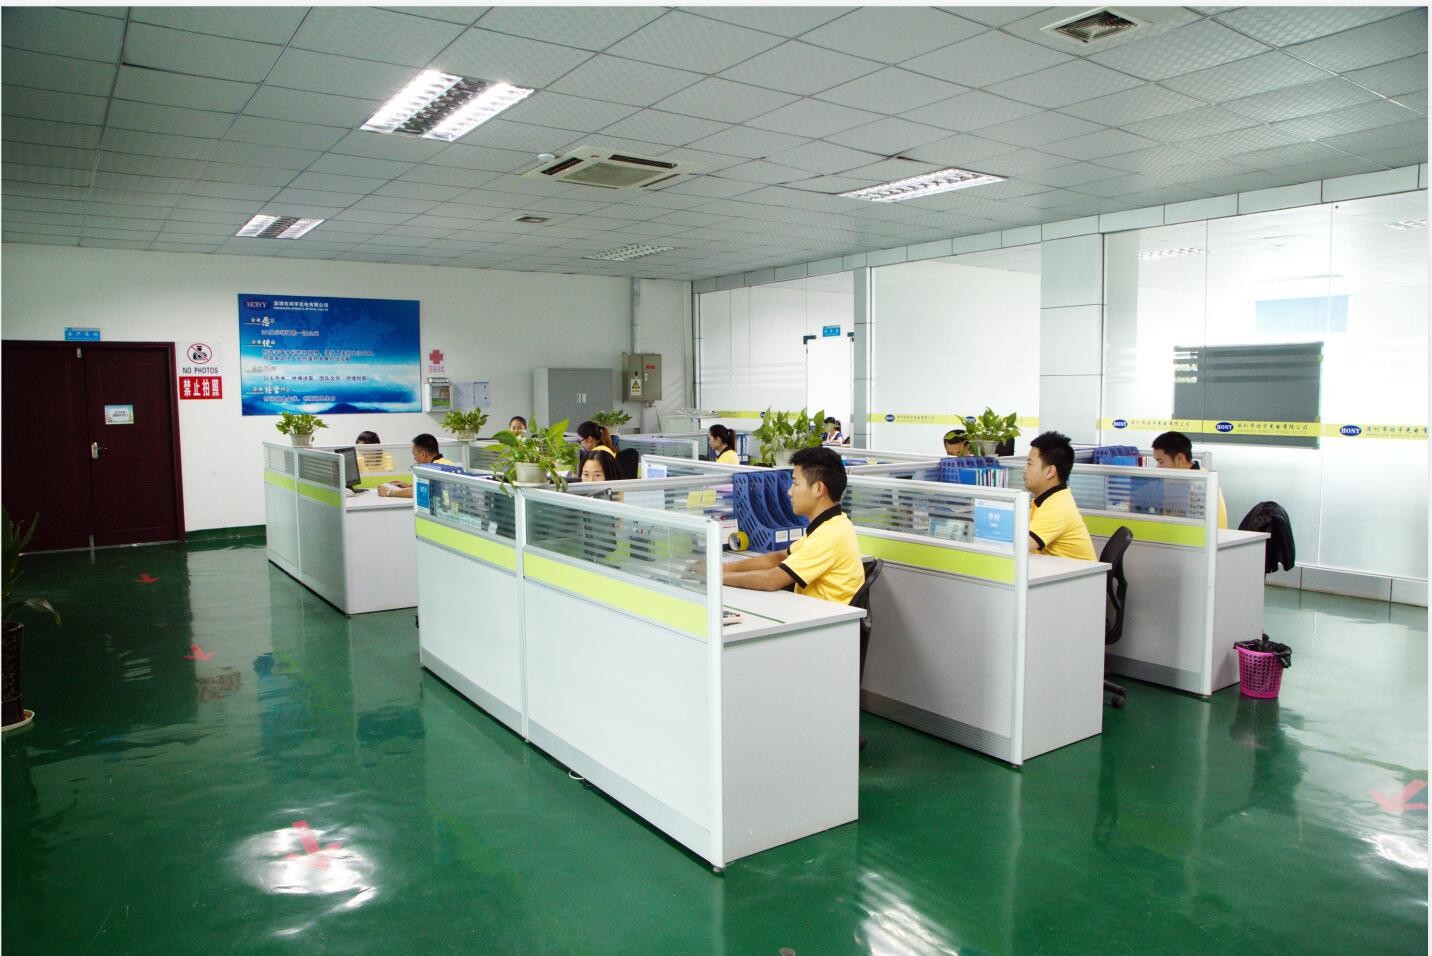 China Shenzhen HONY Optical Co., Limited Perfil da companhia